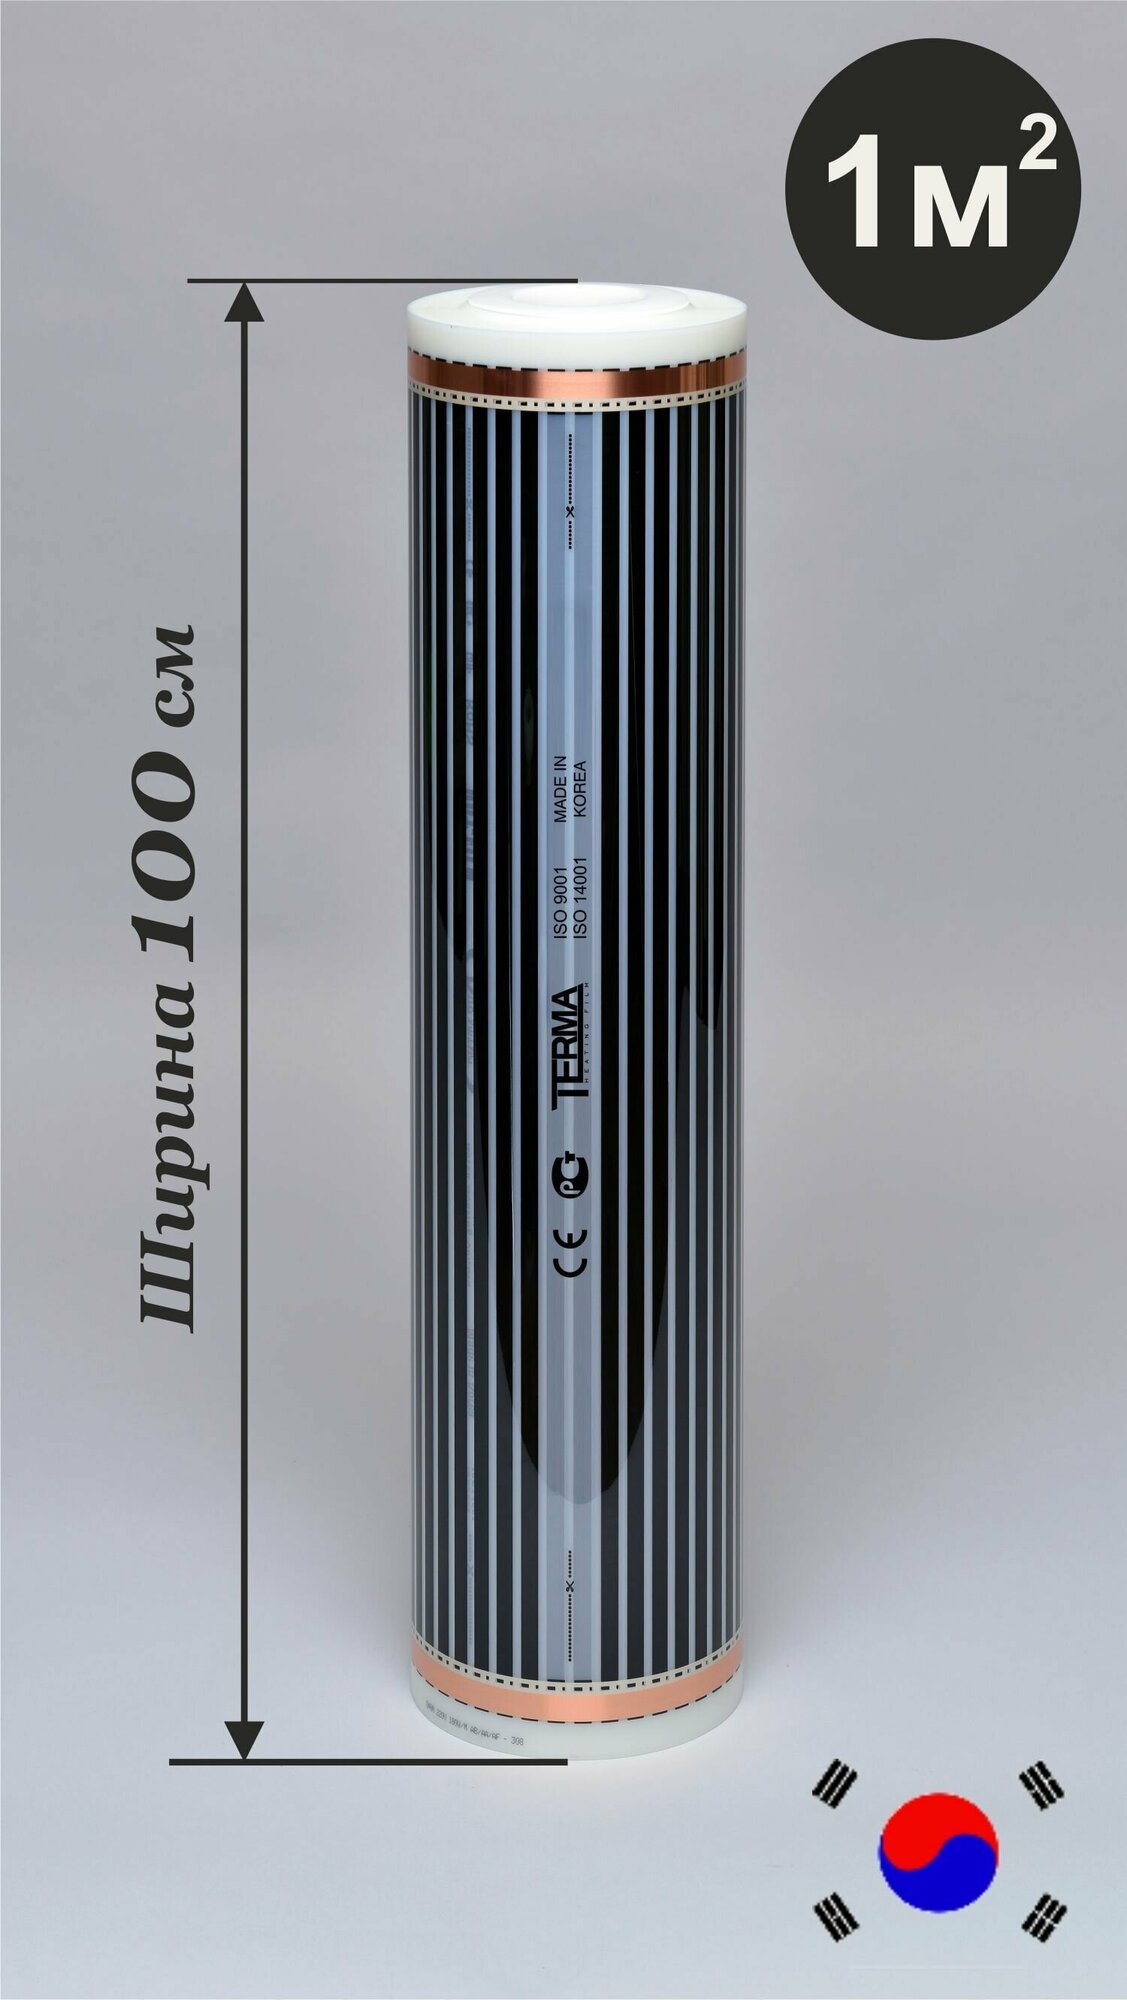 Инфракрасный пленочный теплый пол TERMA ширина 100 см (1 м2) под ламинат, линолеум